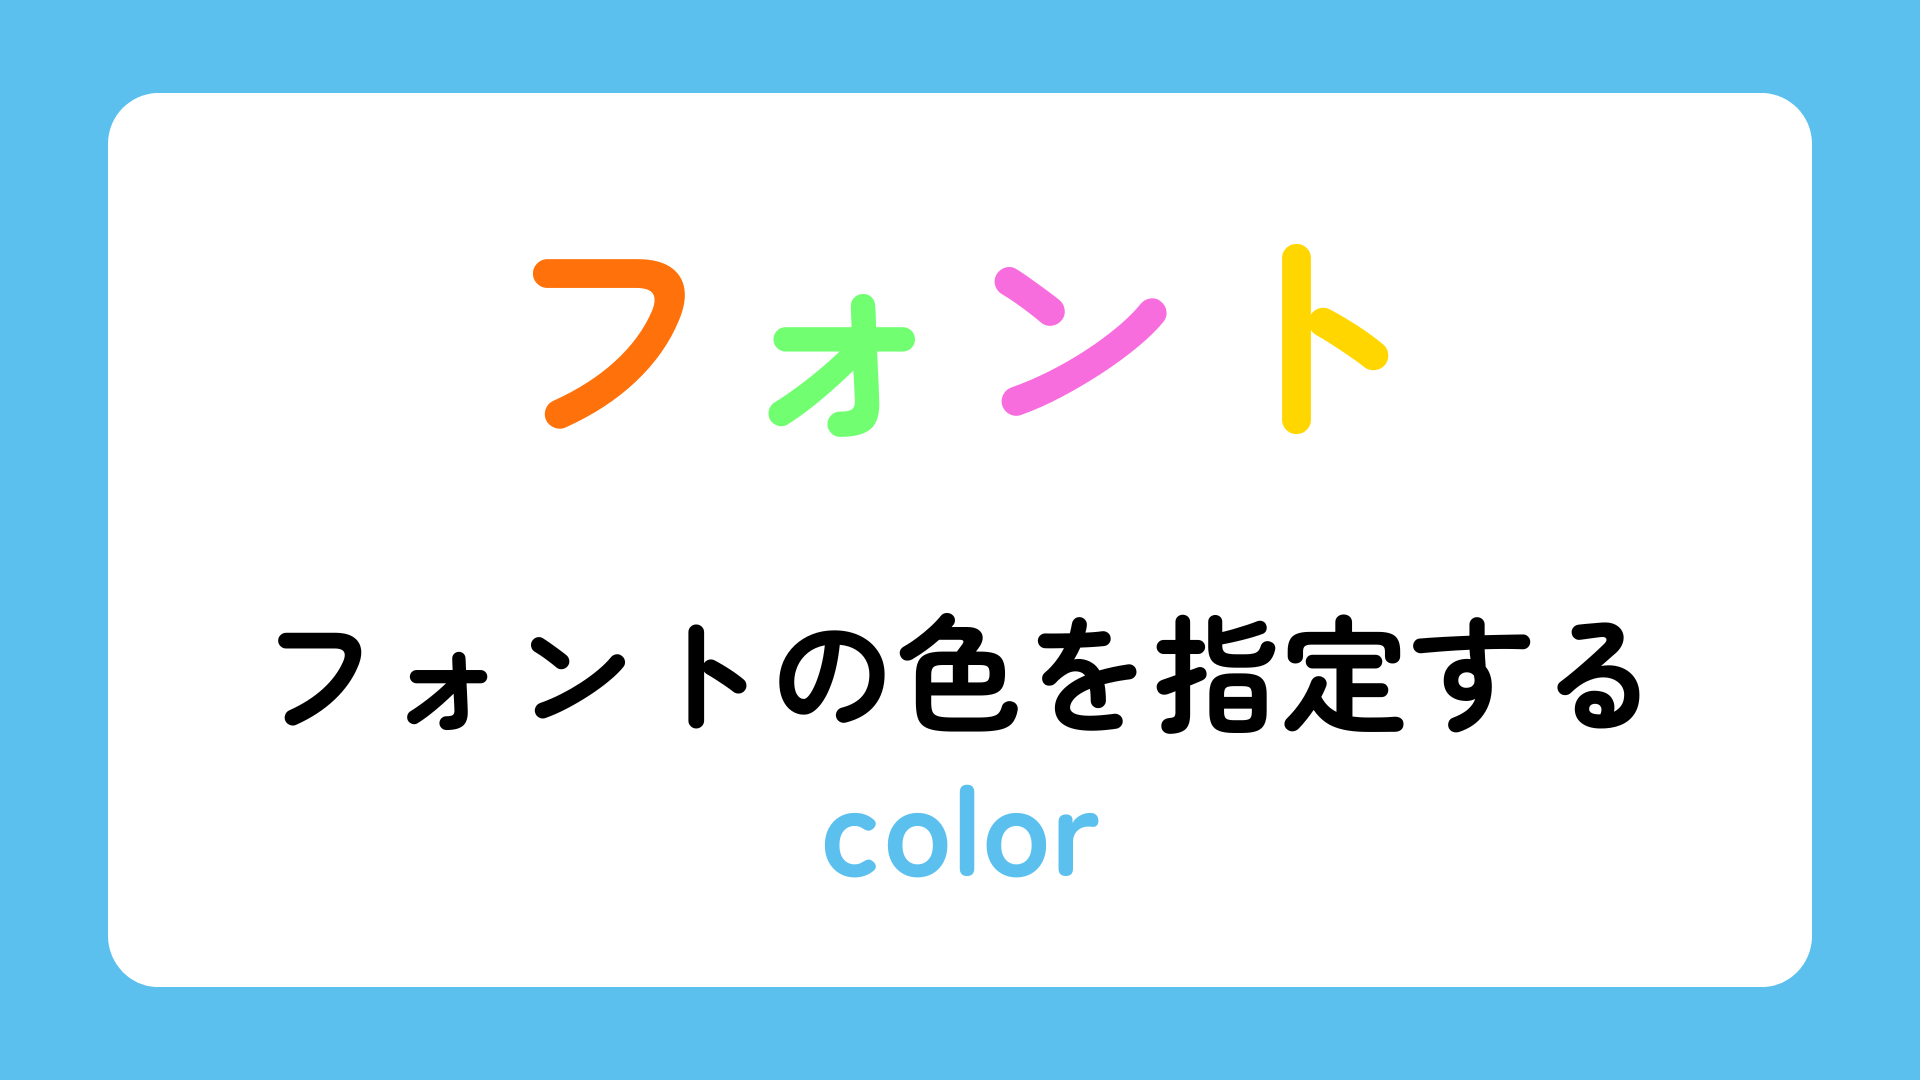 フォントの色を指定するcolorについて解説